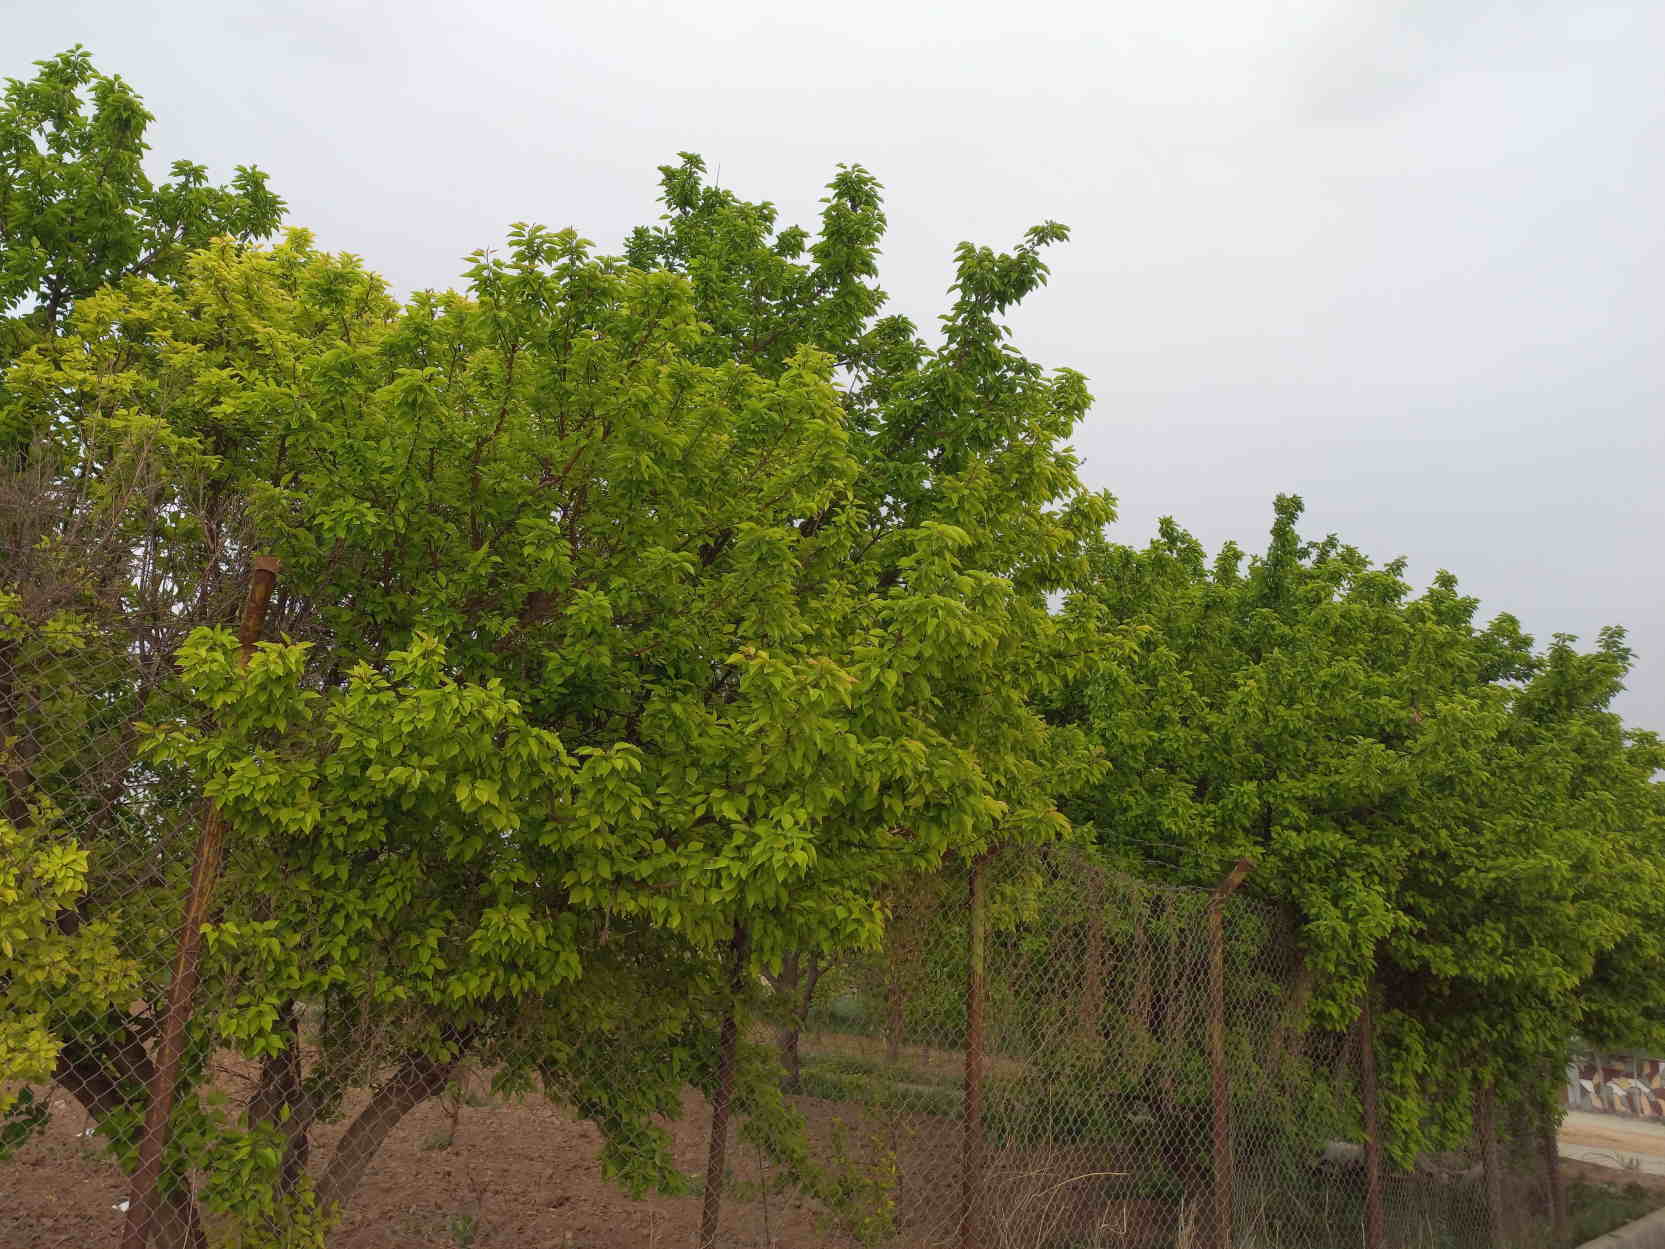 عکس درختان زیبا و خوشرنگ از نمایی اندکی دور سن بین sanbin.ir